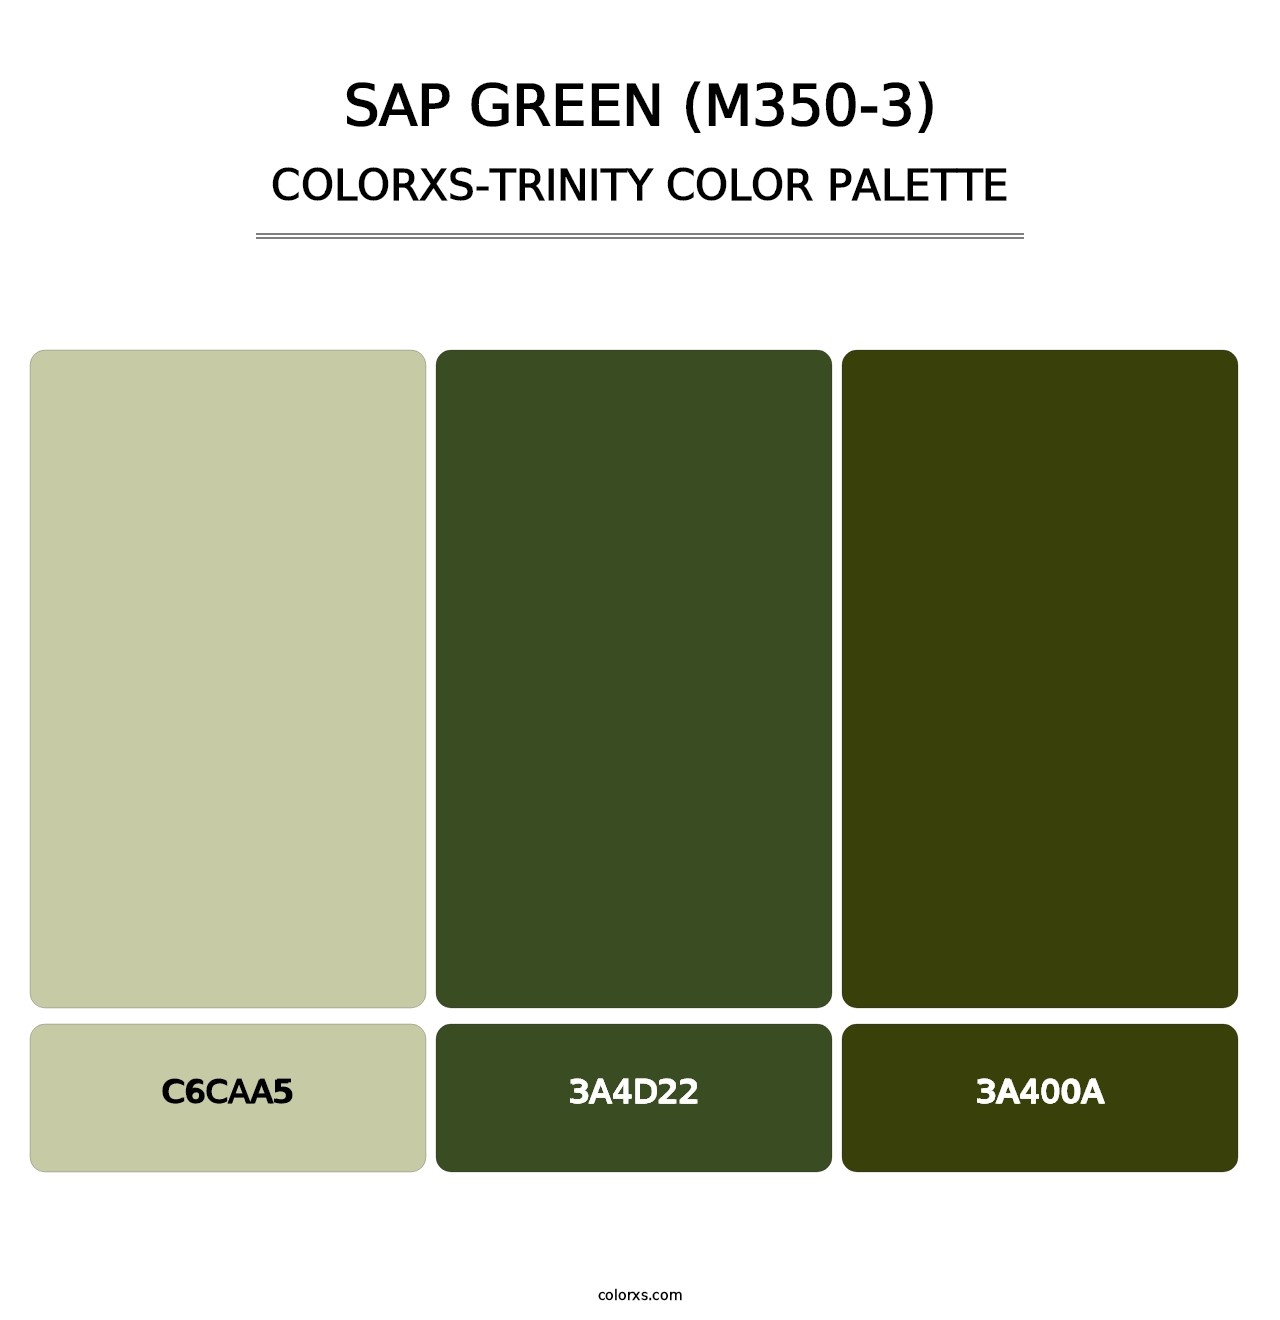 Sap Green (M350-3) - Colorxs Trinity Palette